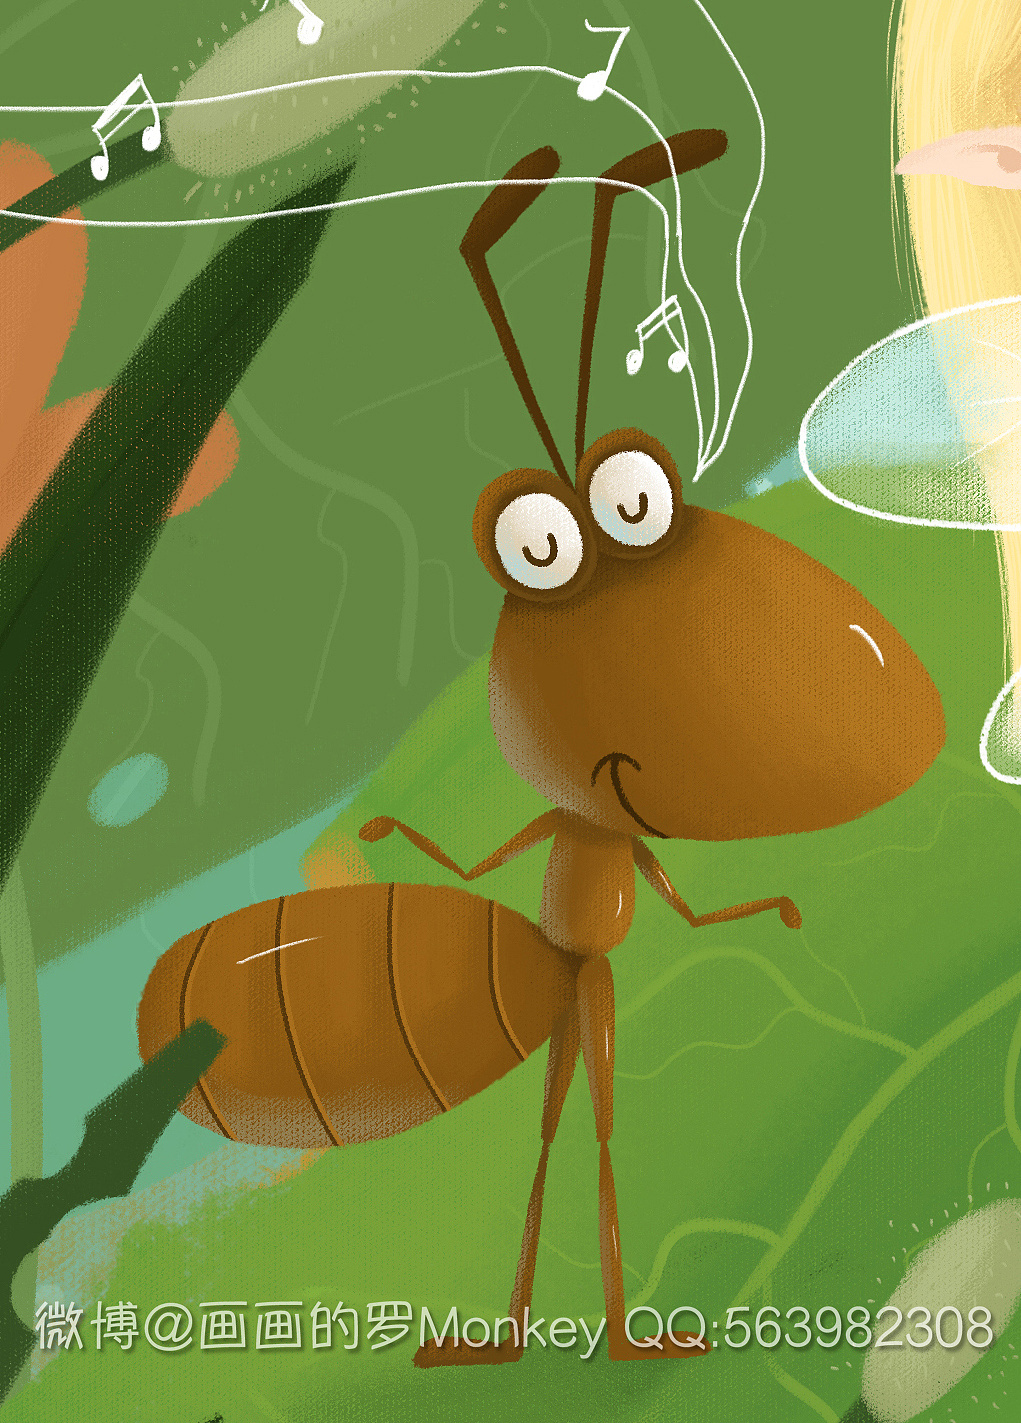 微观的世界 精灵 蚂蚁 毛毛虫